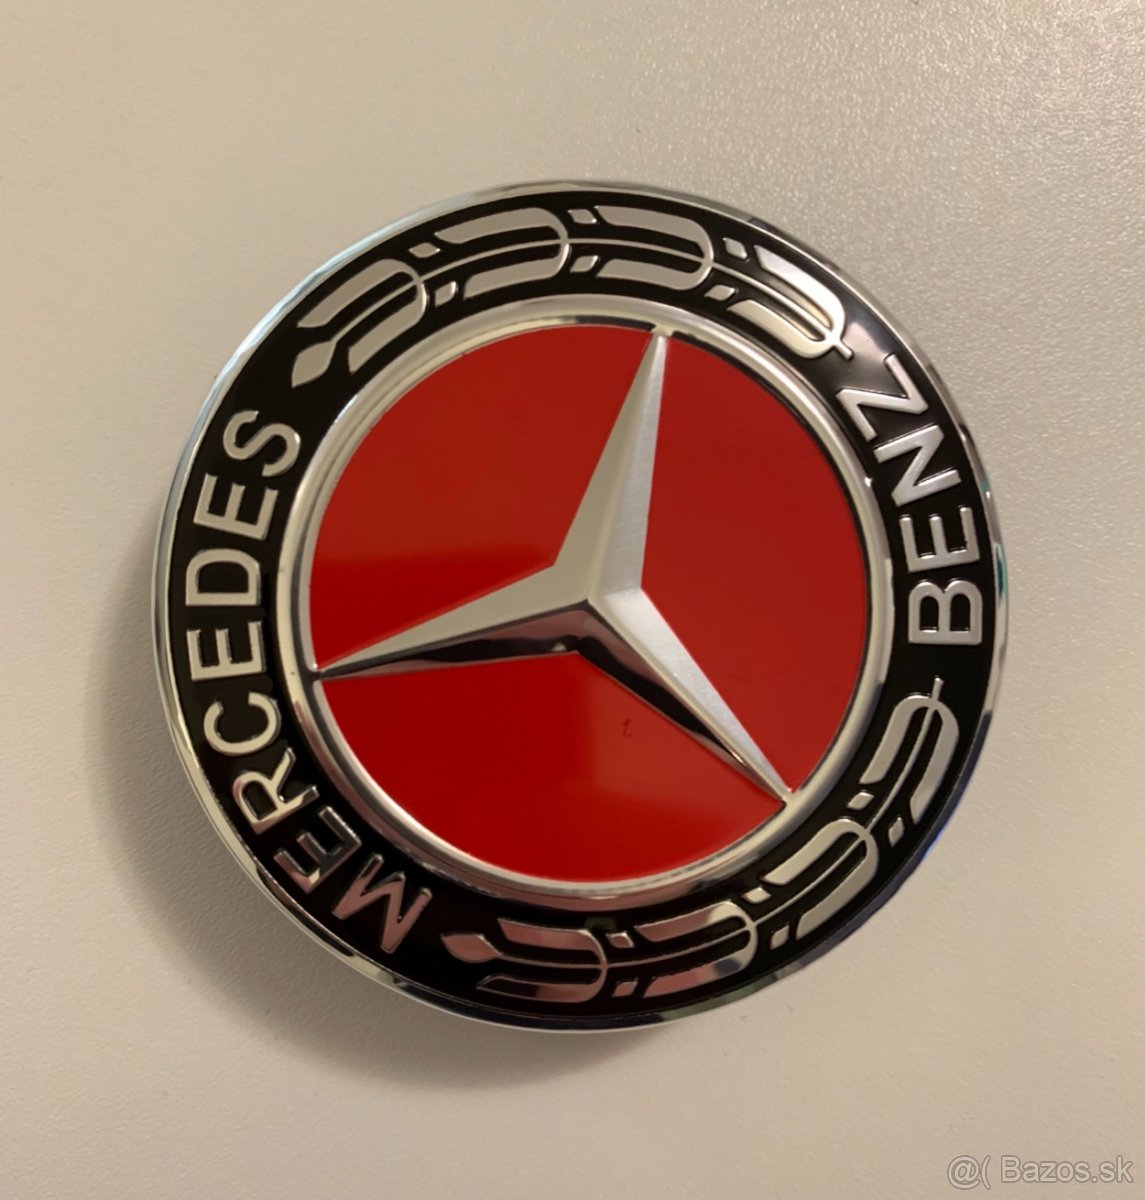 Stredové krytky na disky Mercedes-Benz 75mm červené